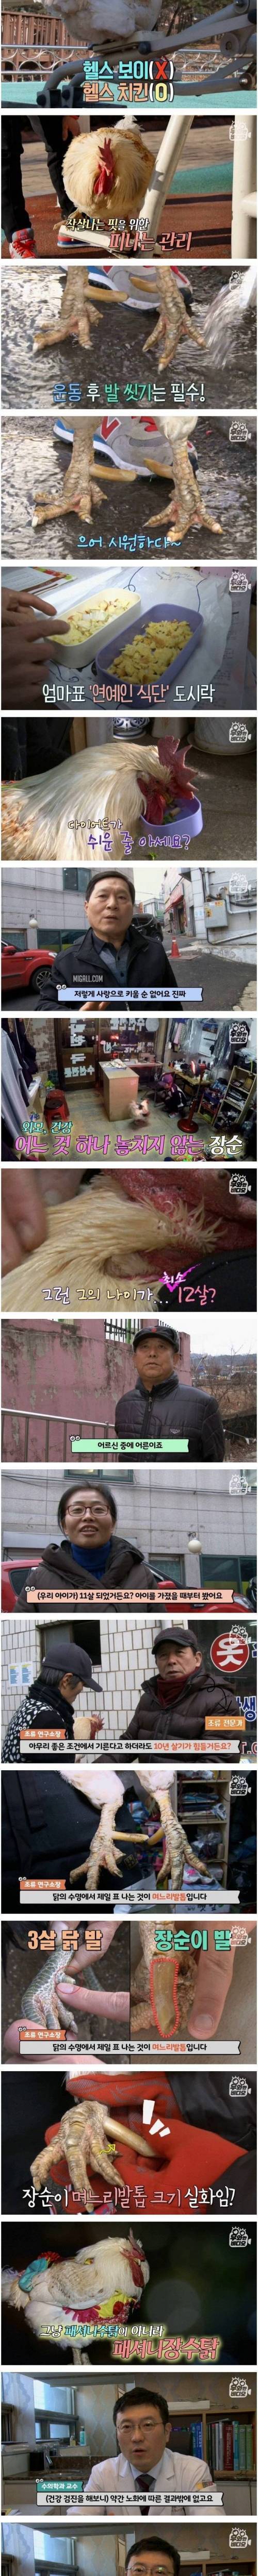 [스압] 학교 앞 병아리를 까리한 장수닭으로 키우는 방법.jpg